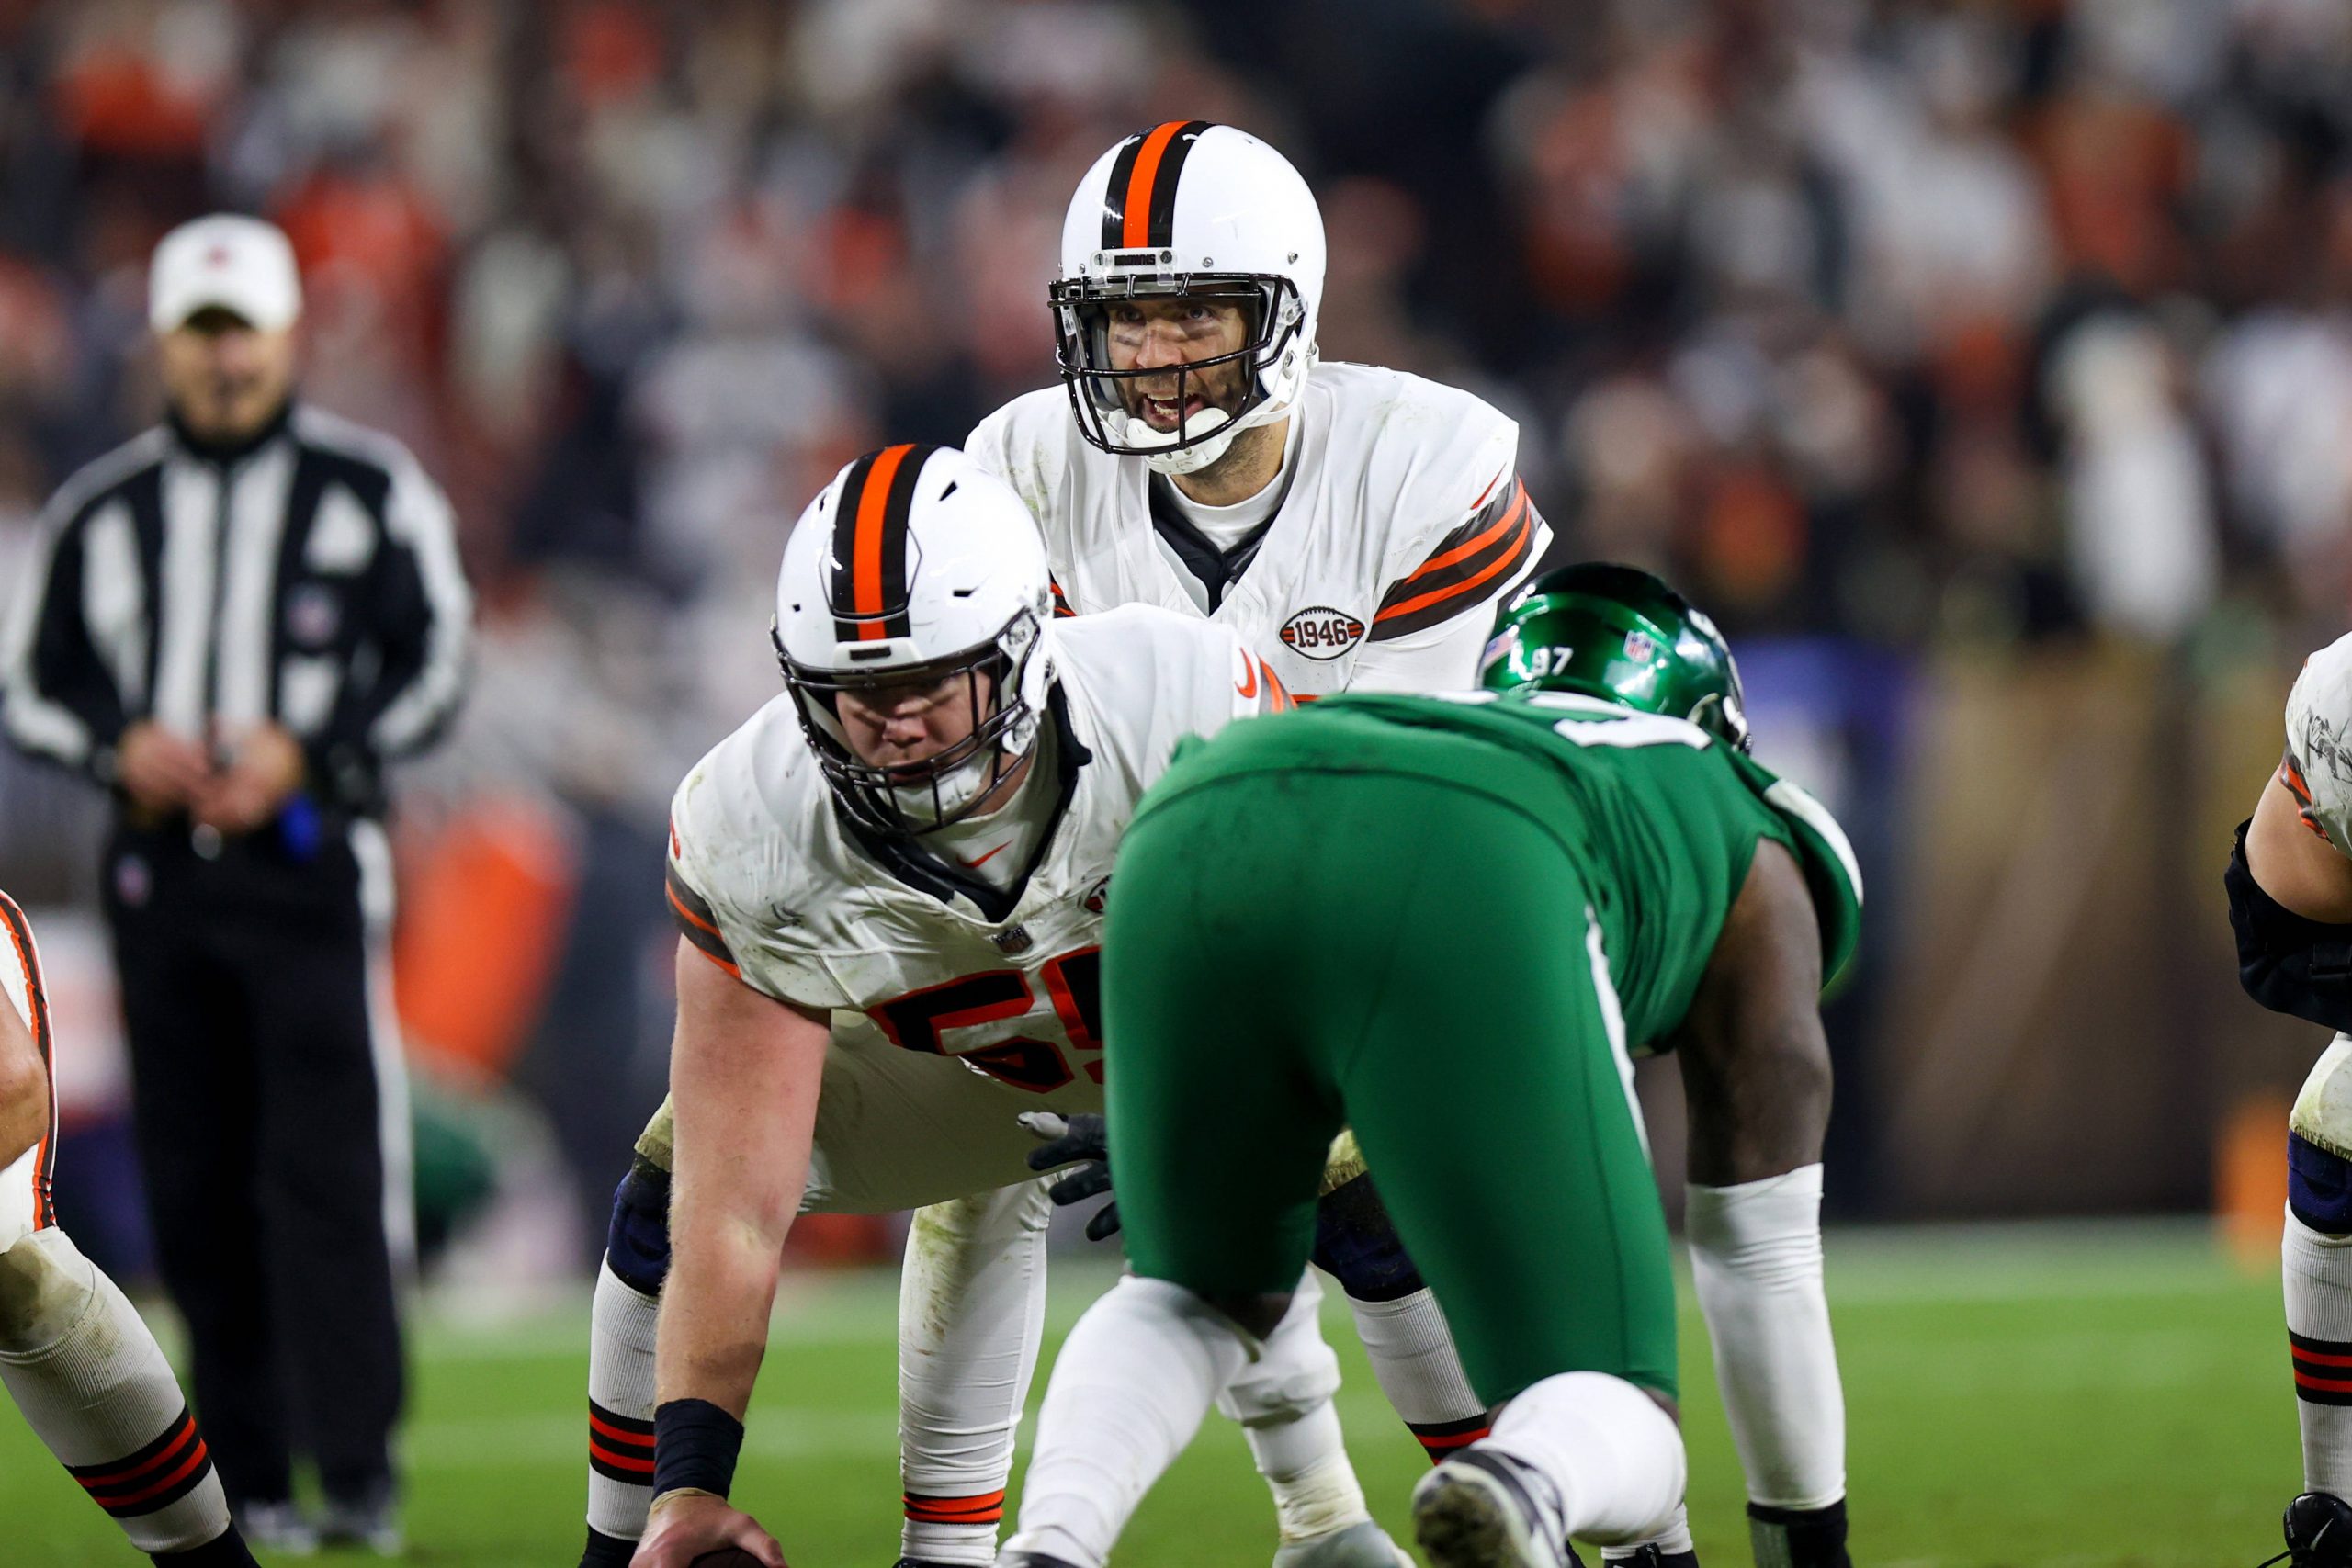 FootballR - NFL - Joe Flacco führt die Cleveland Browns in einem spannenden Spiel an.